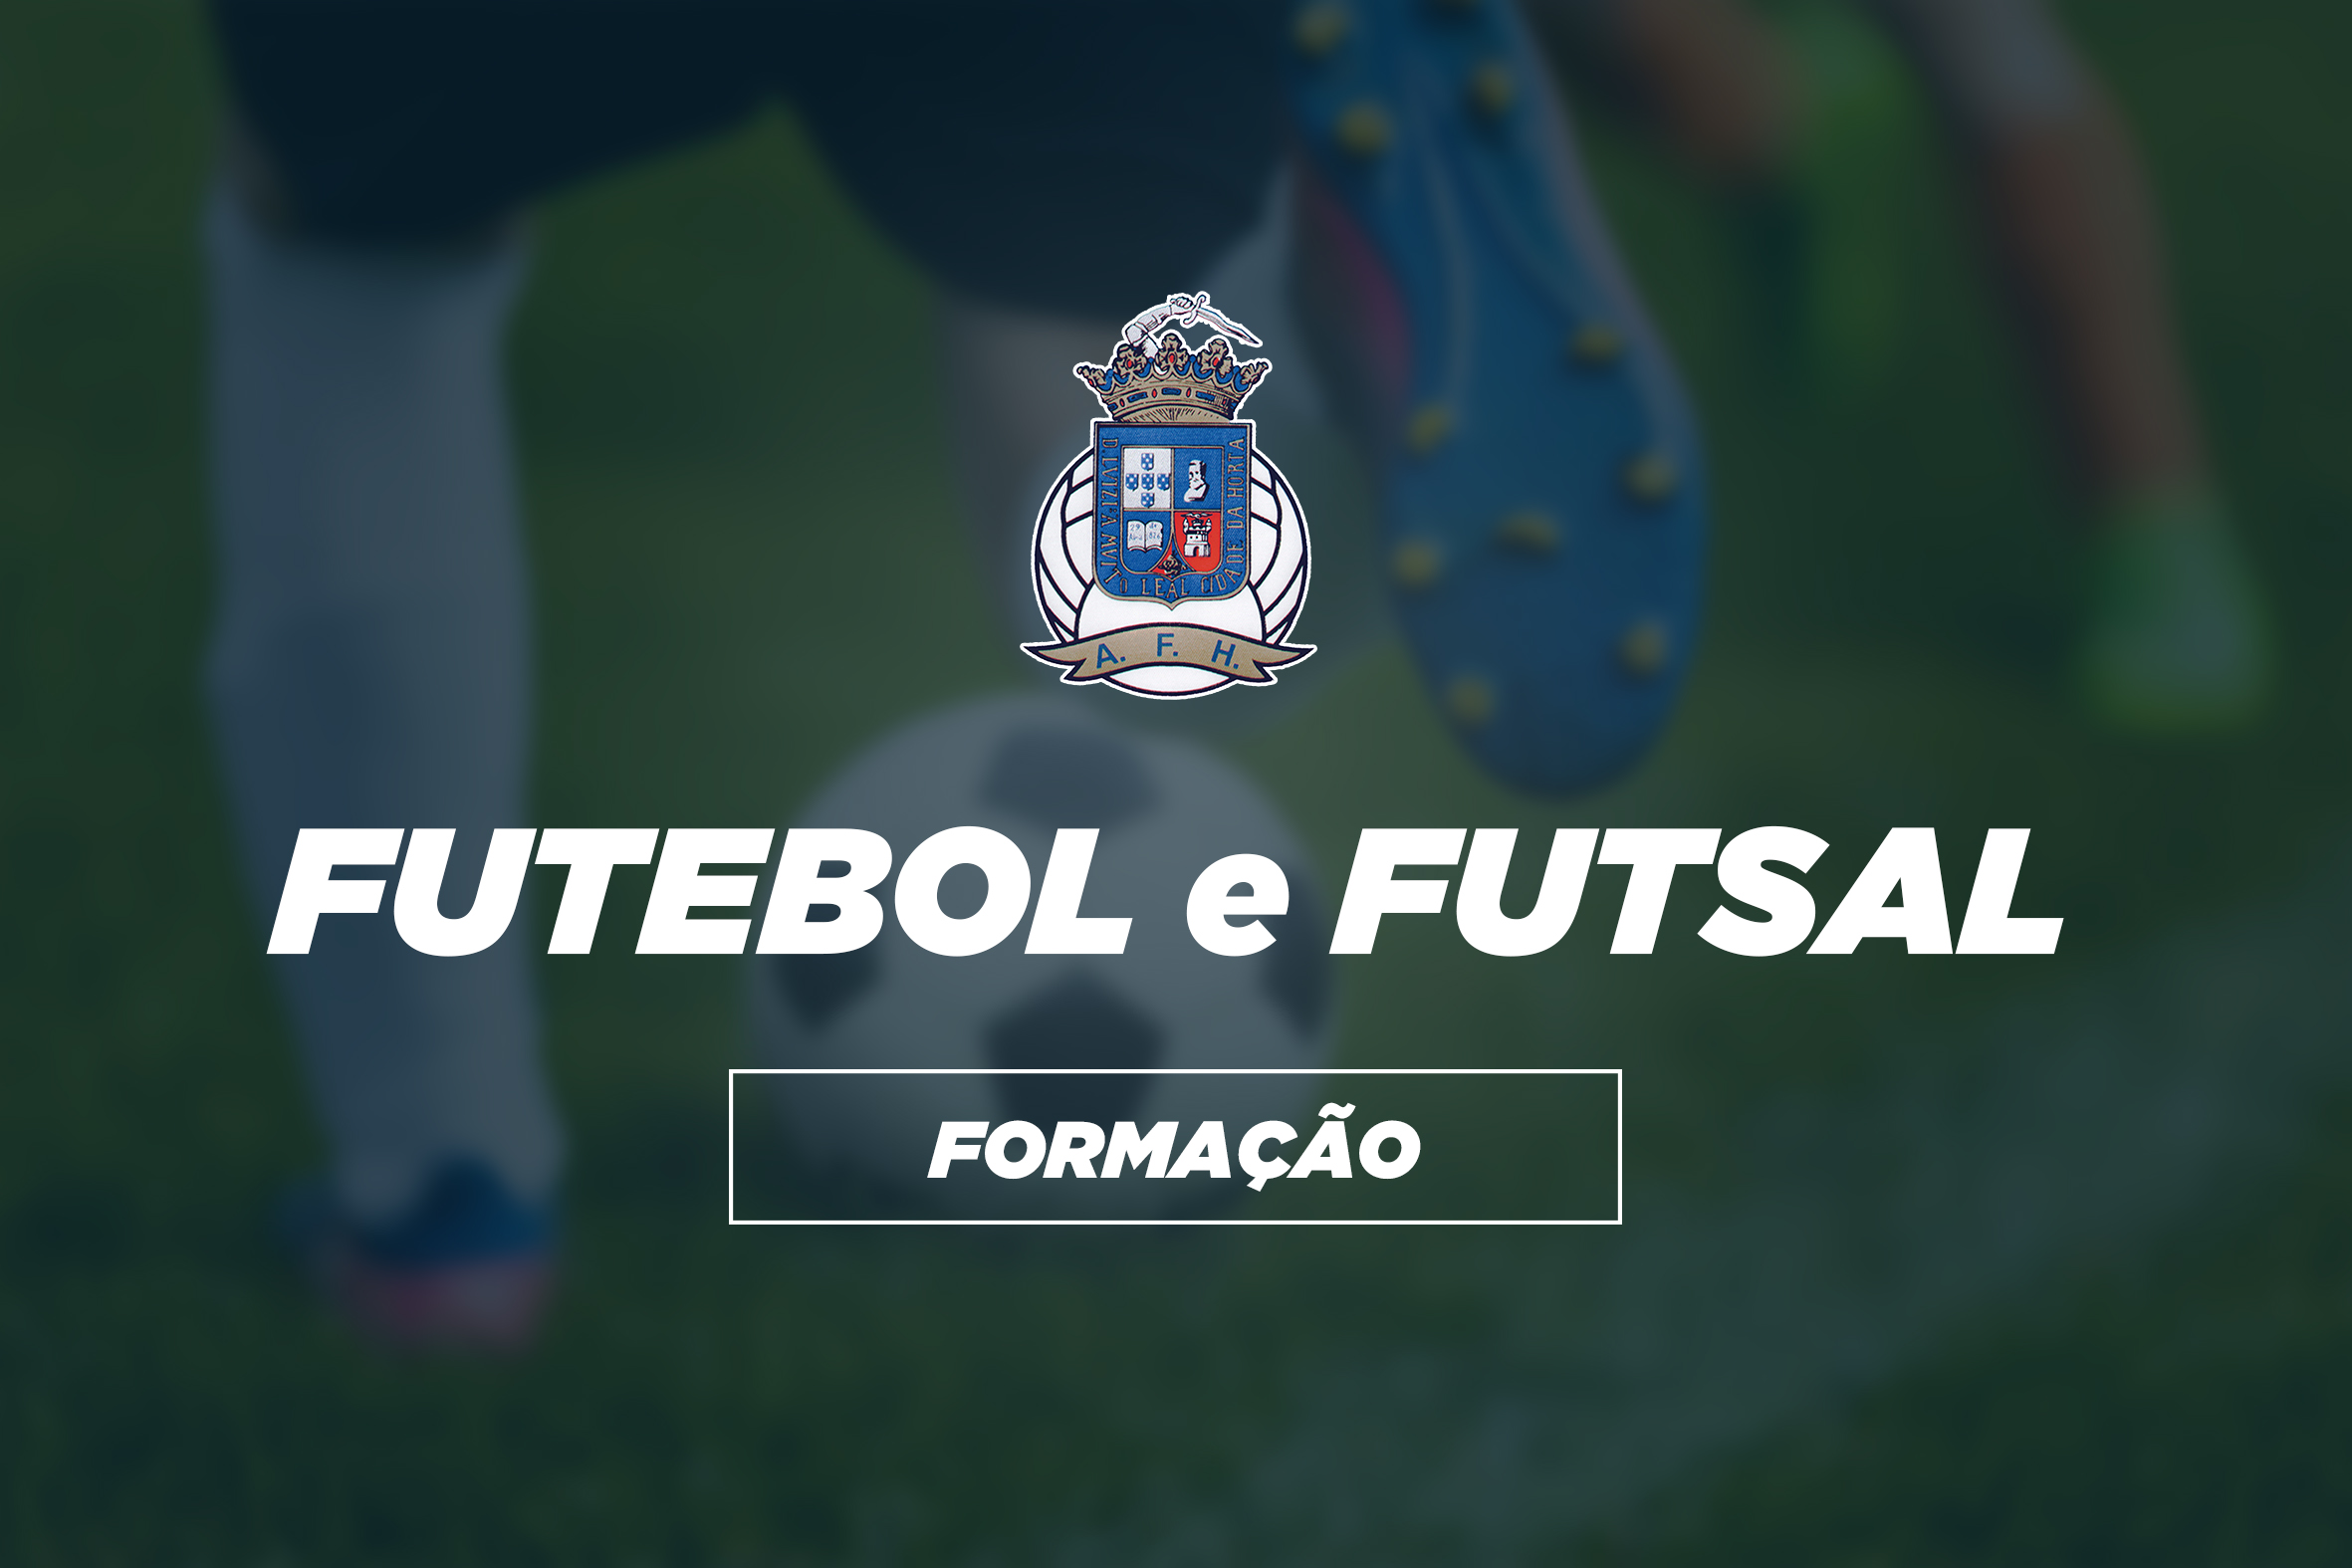 Competições AFH | Resultados Formação - Futebol e Futsal